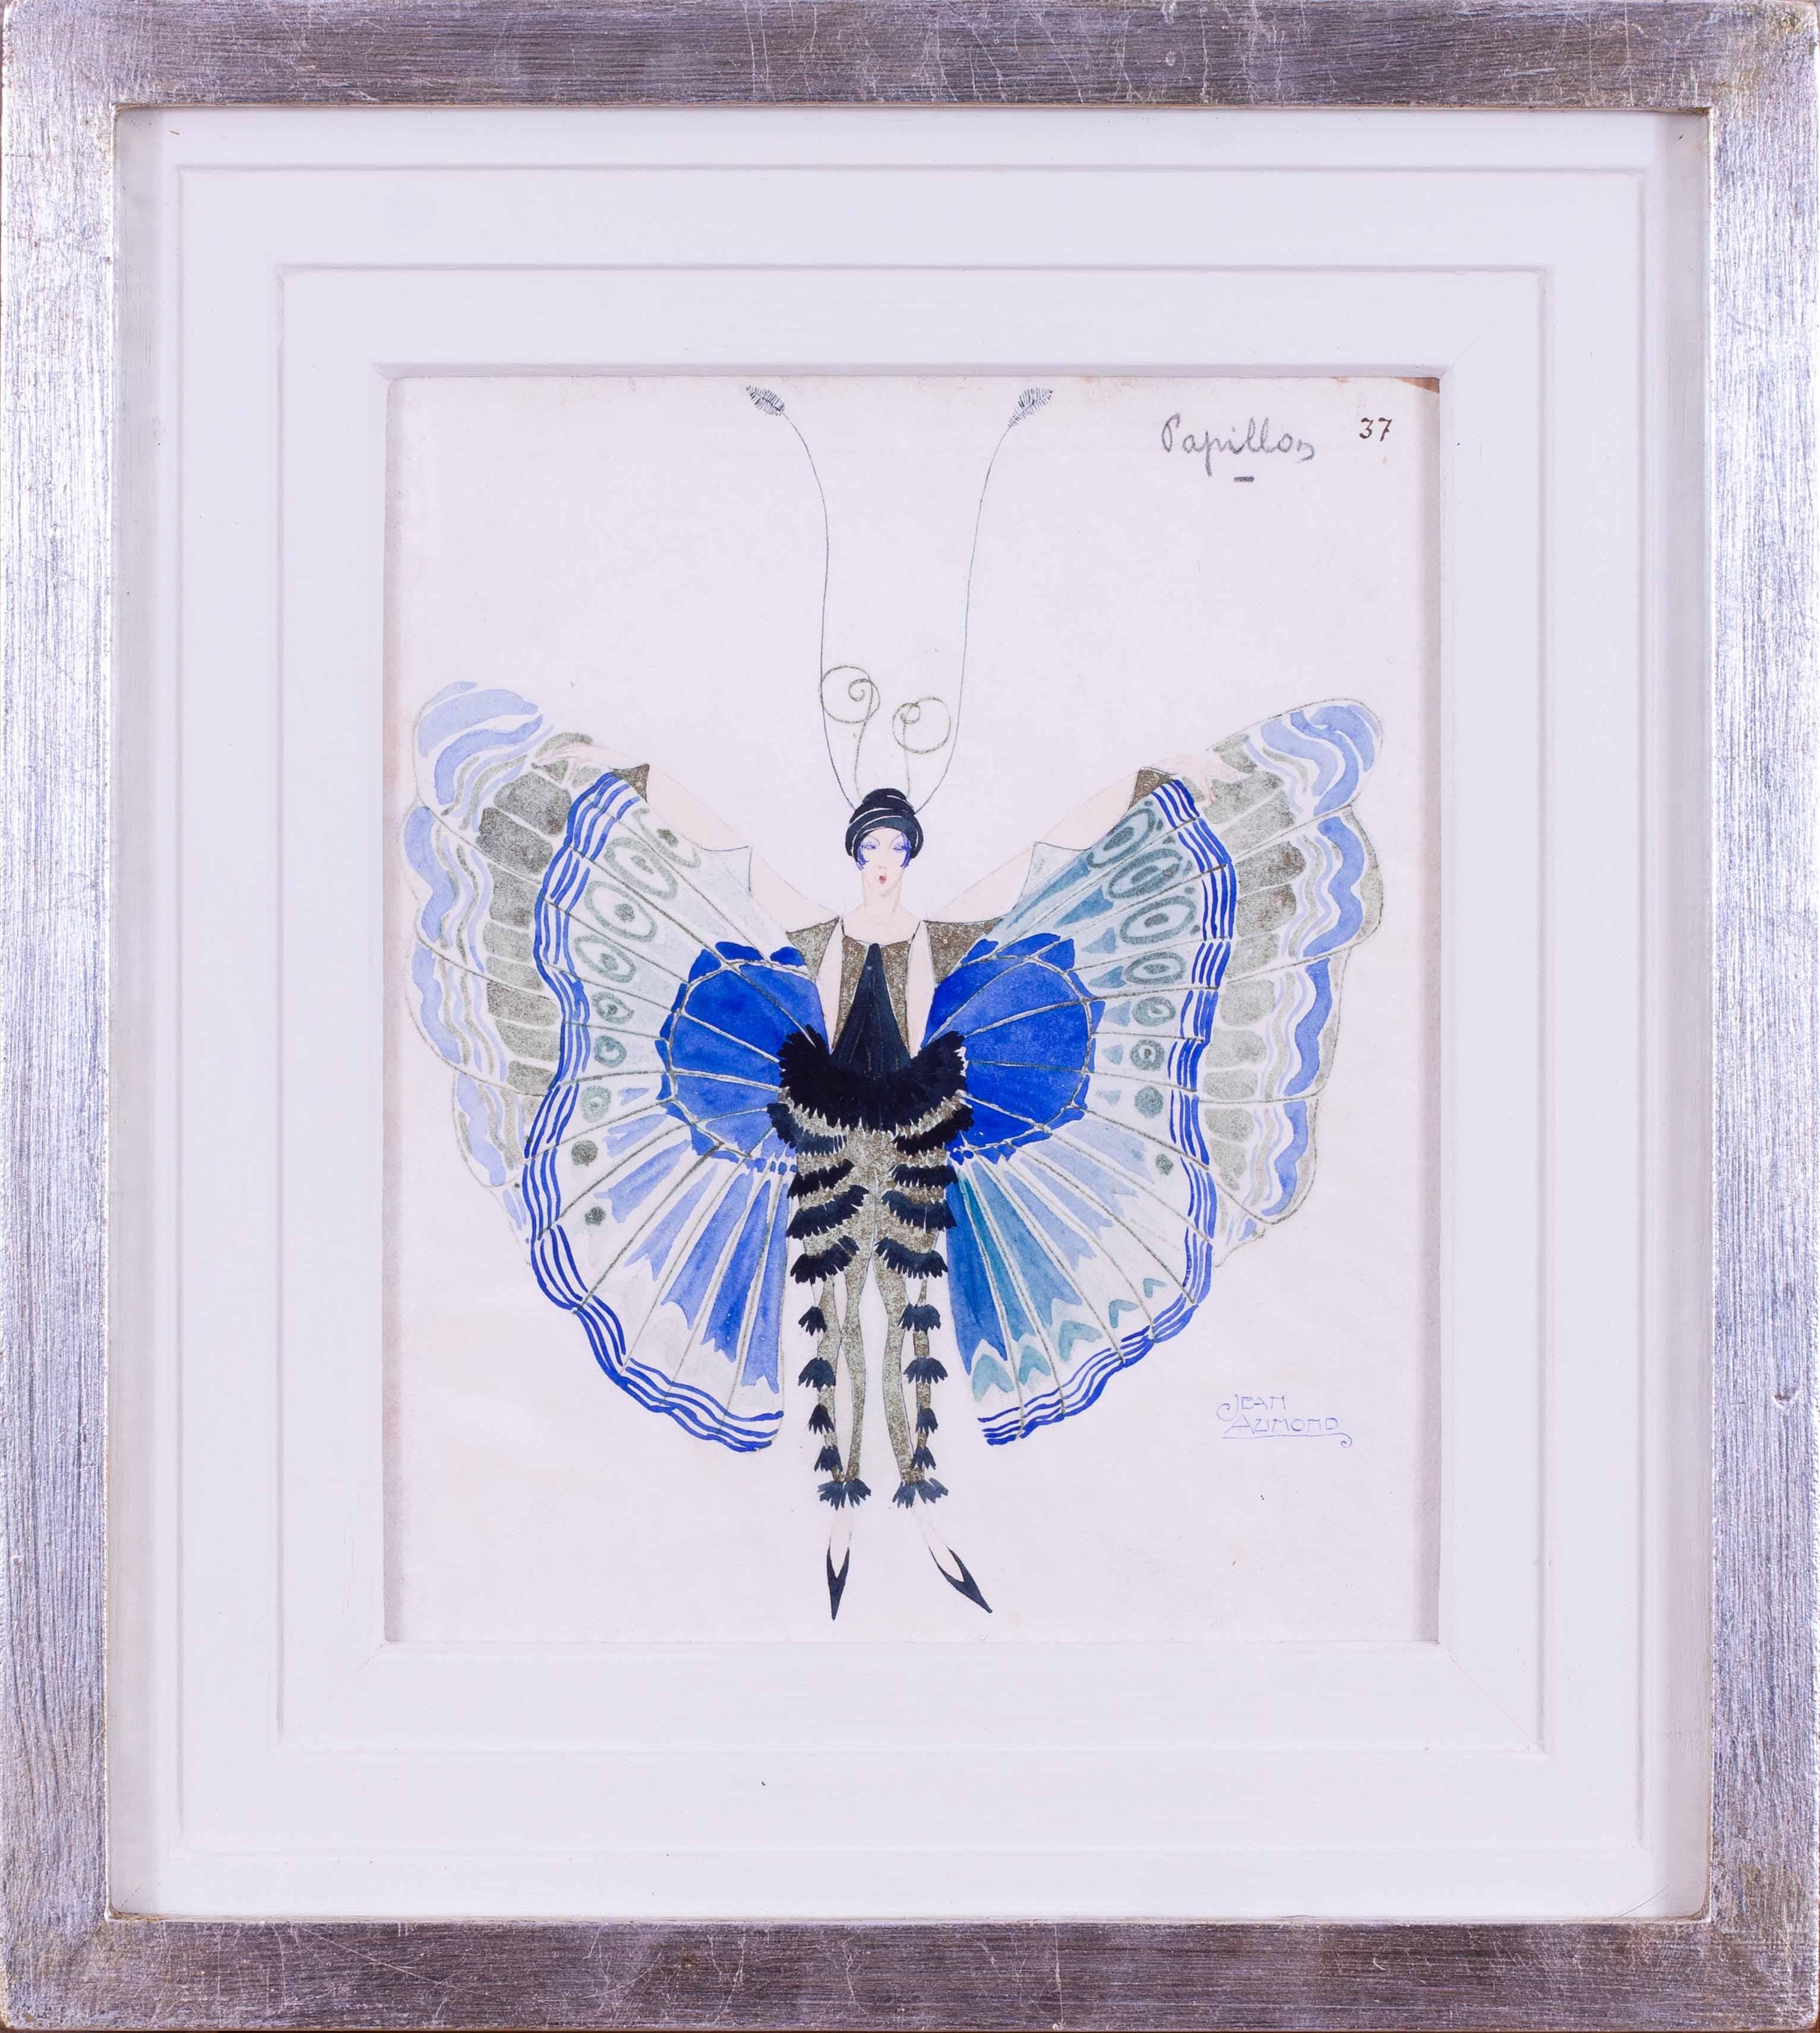 Eine sehr charmante und stilvolle Art-Déco-Kostümstudie einer Dame in einem blauen Schmetterlingskostüm des französischen Kostümbildners Jean Aumond.  Jean Aumond (Franzose, tätig von 1919 bis 1965)  galt als einer der brillantesten und